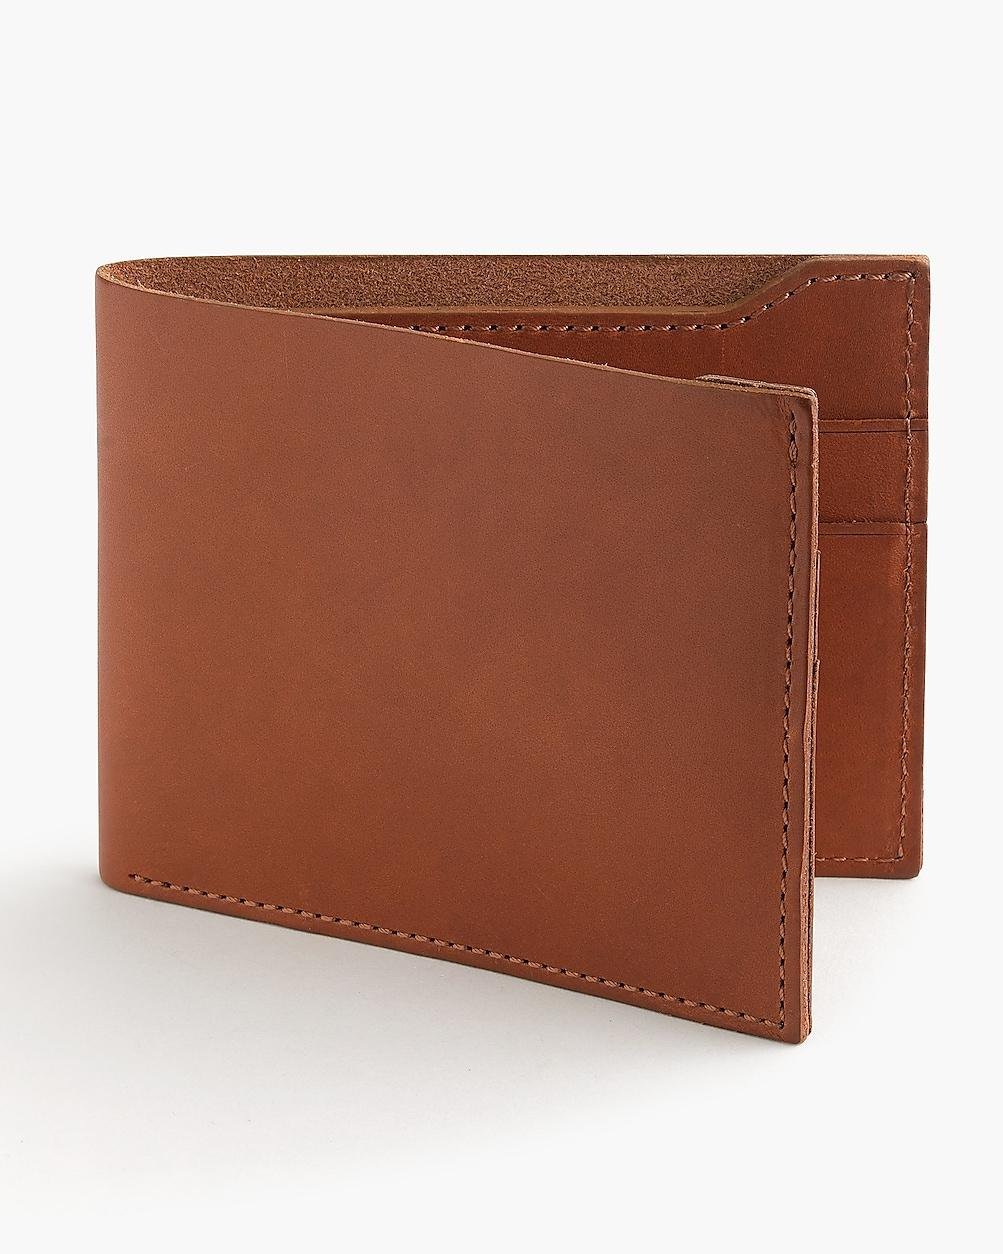 Billfold wallet in Italian leather by J.CREW